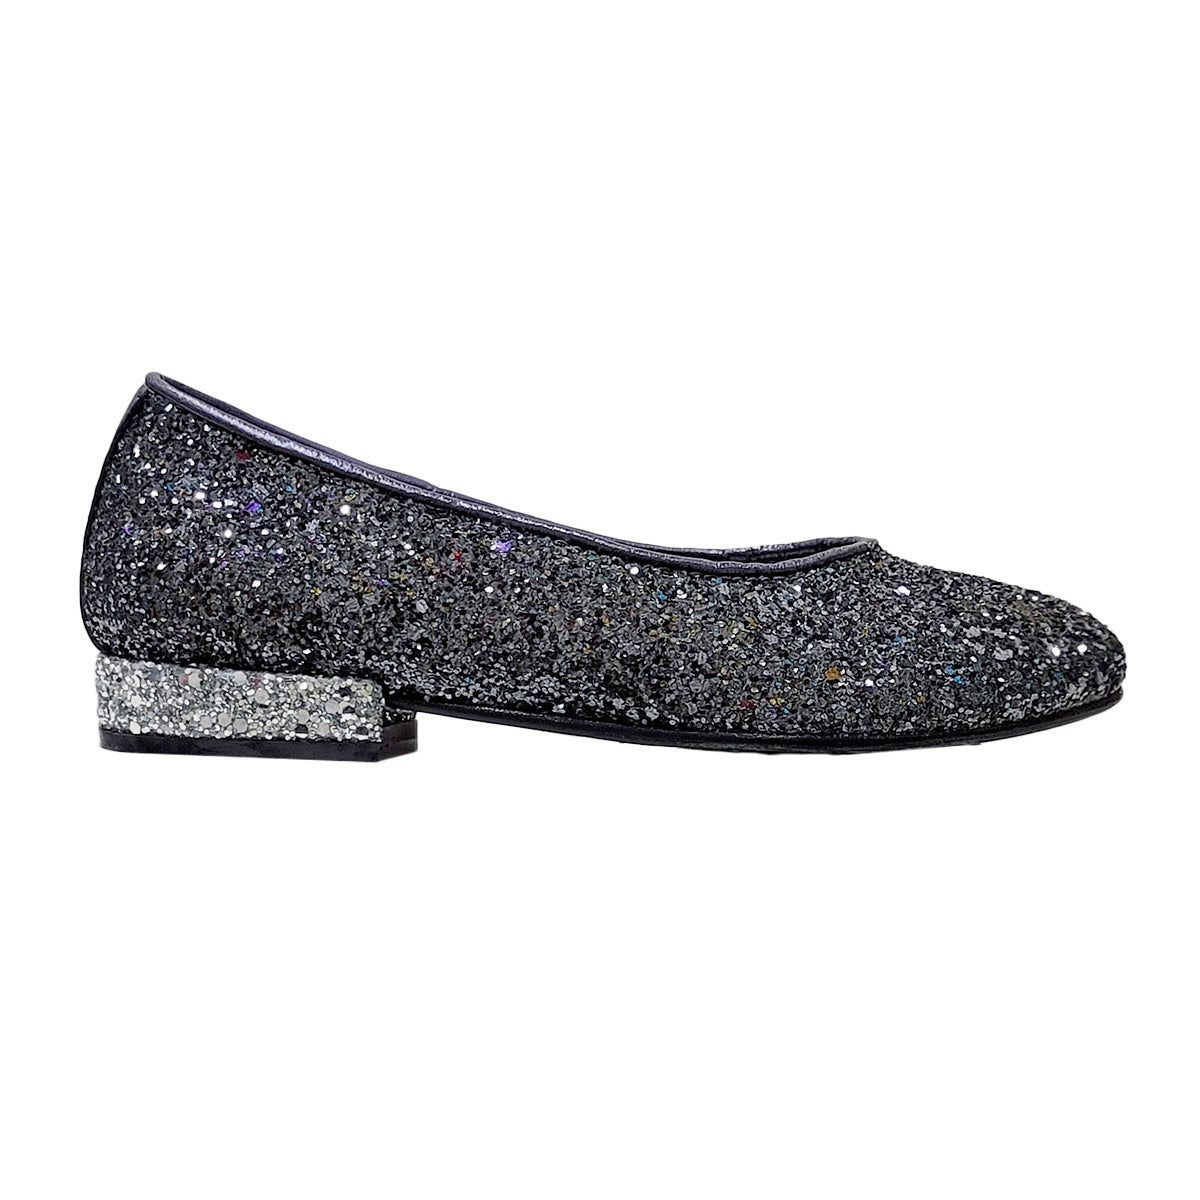 Simonetta Black-colored shoe